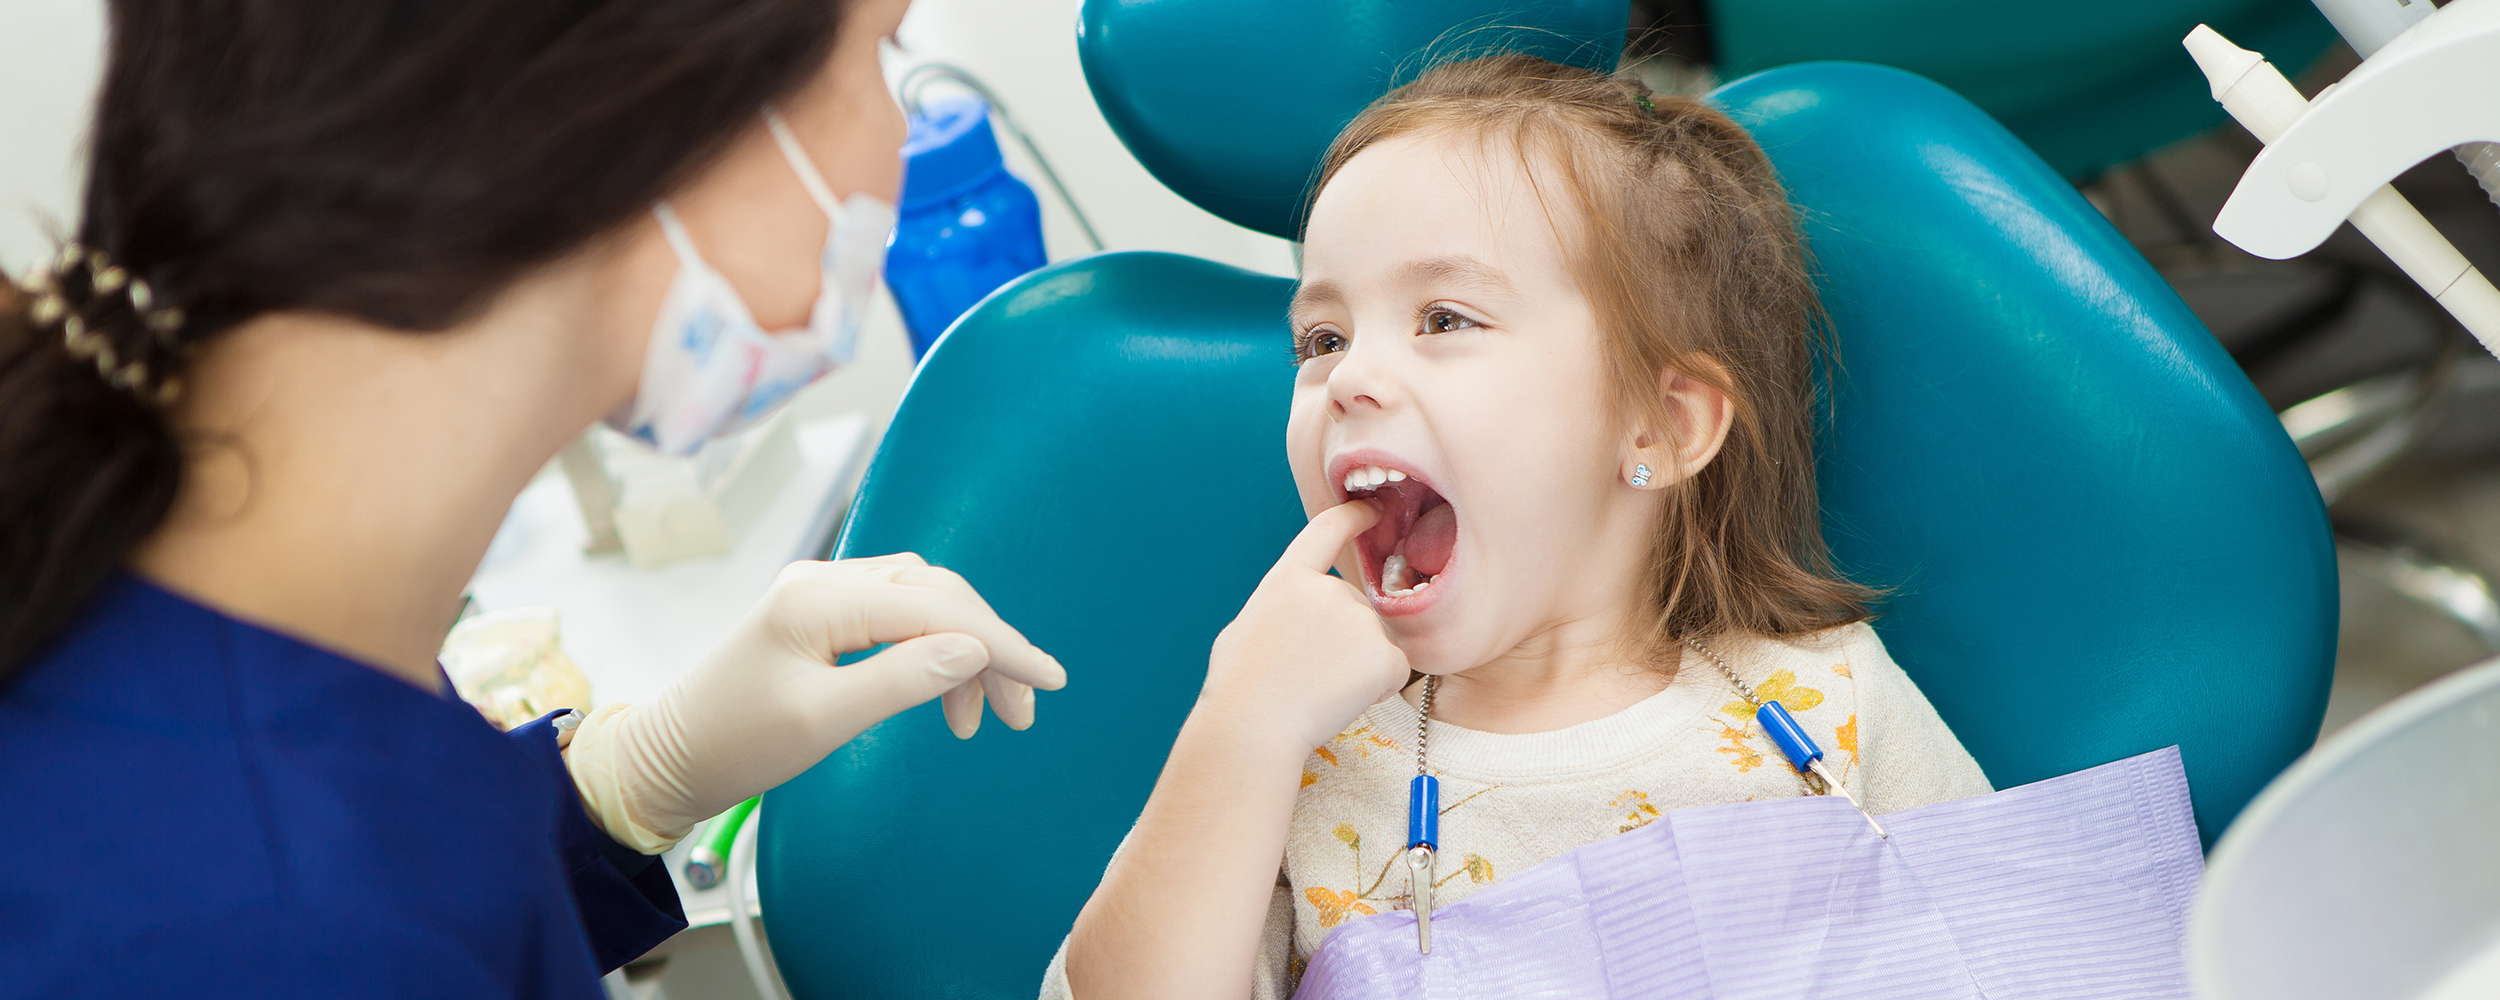 اهمیت ترمیم کردن دندان های پوسیده 